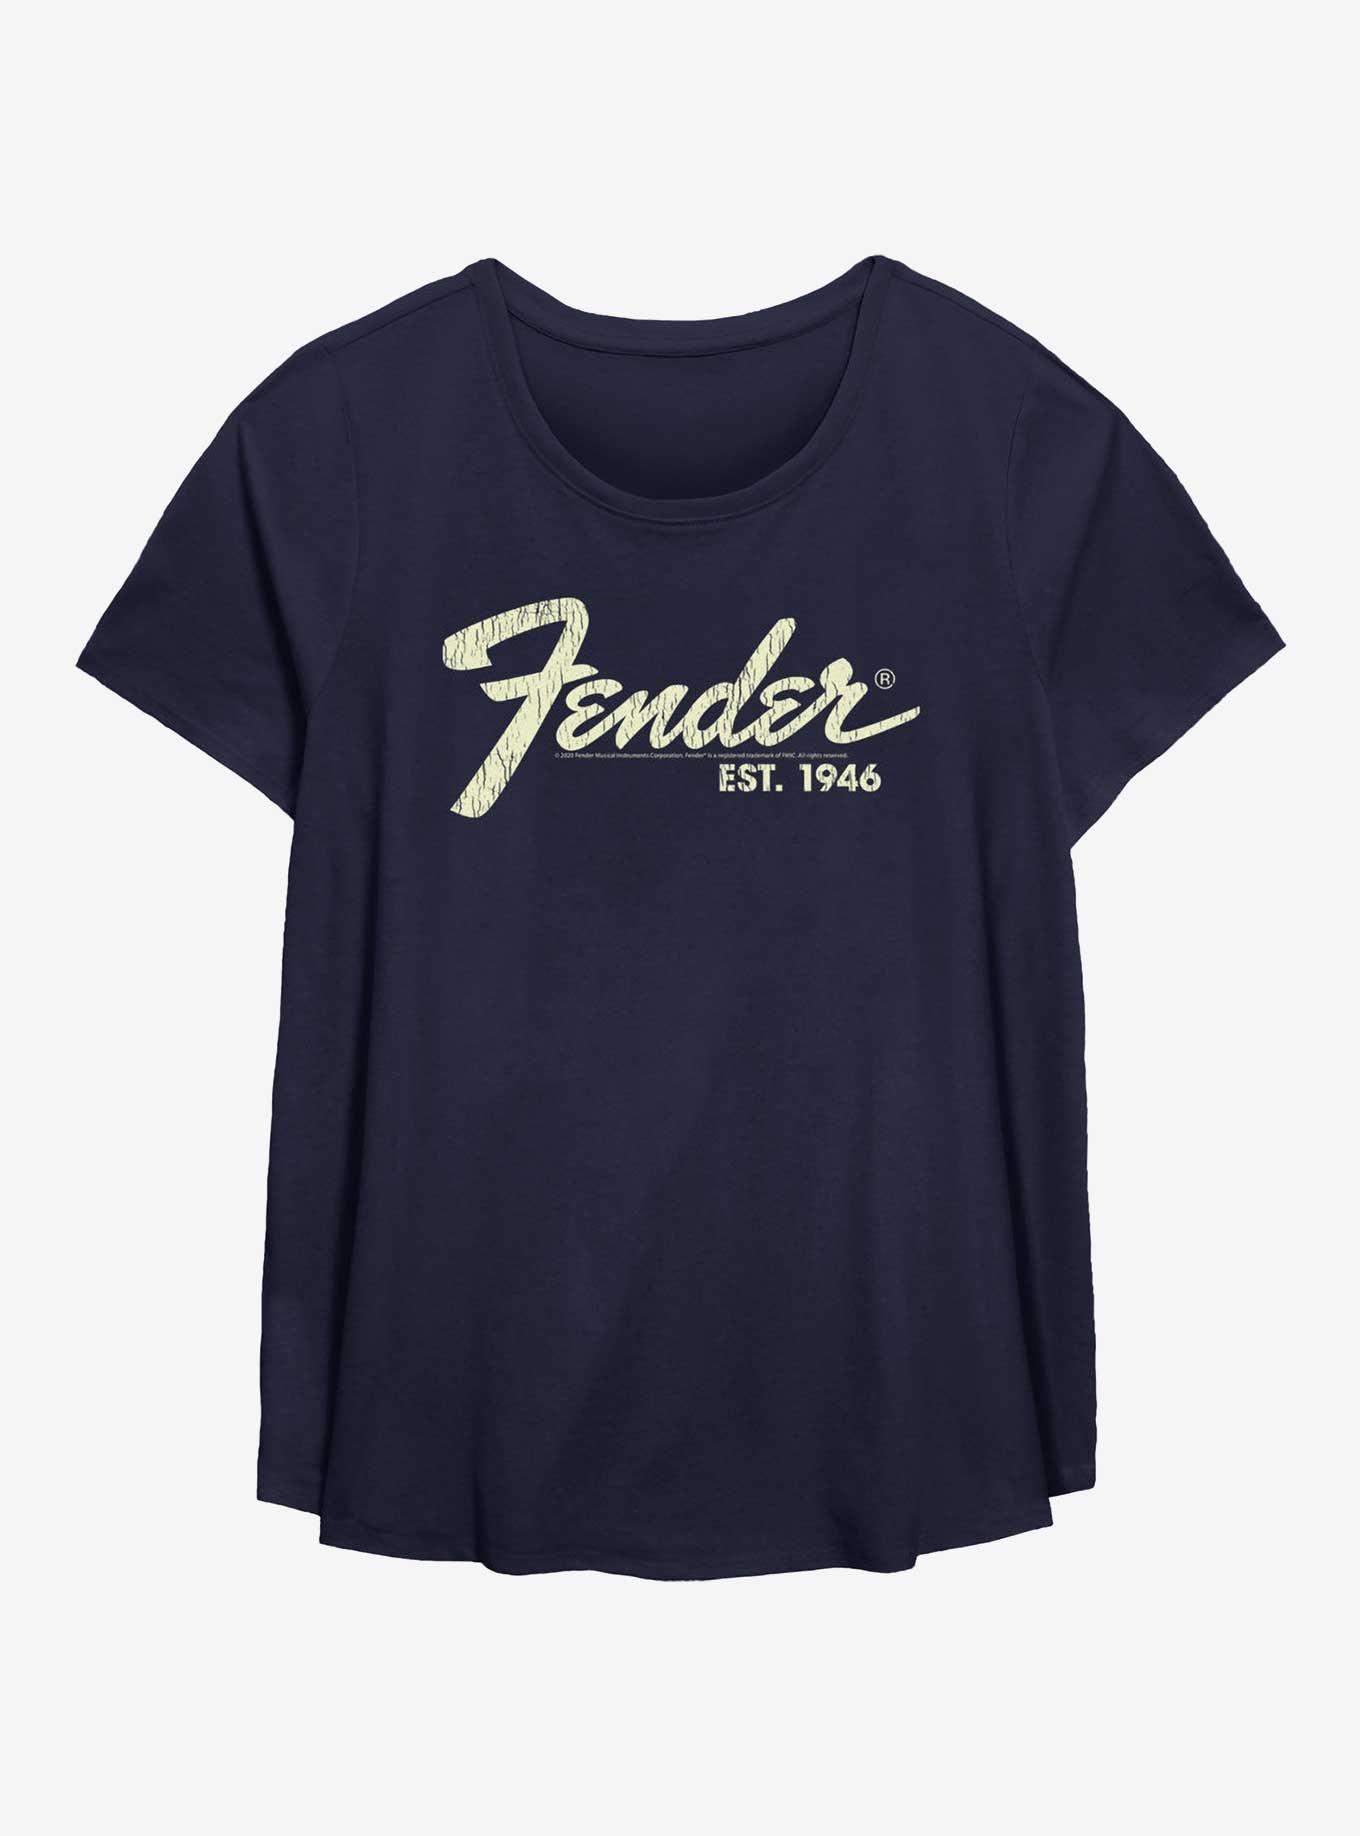 Fender Est. 1946 Girls T-Shirt Plus Size, NAVY, hi-res